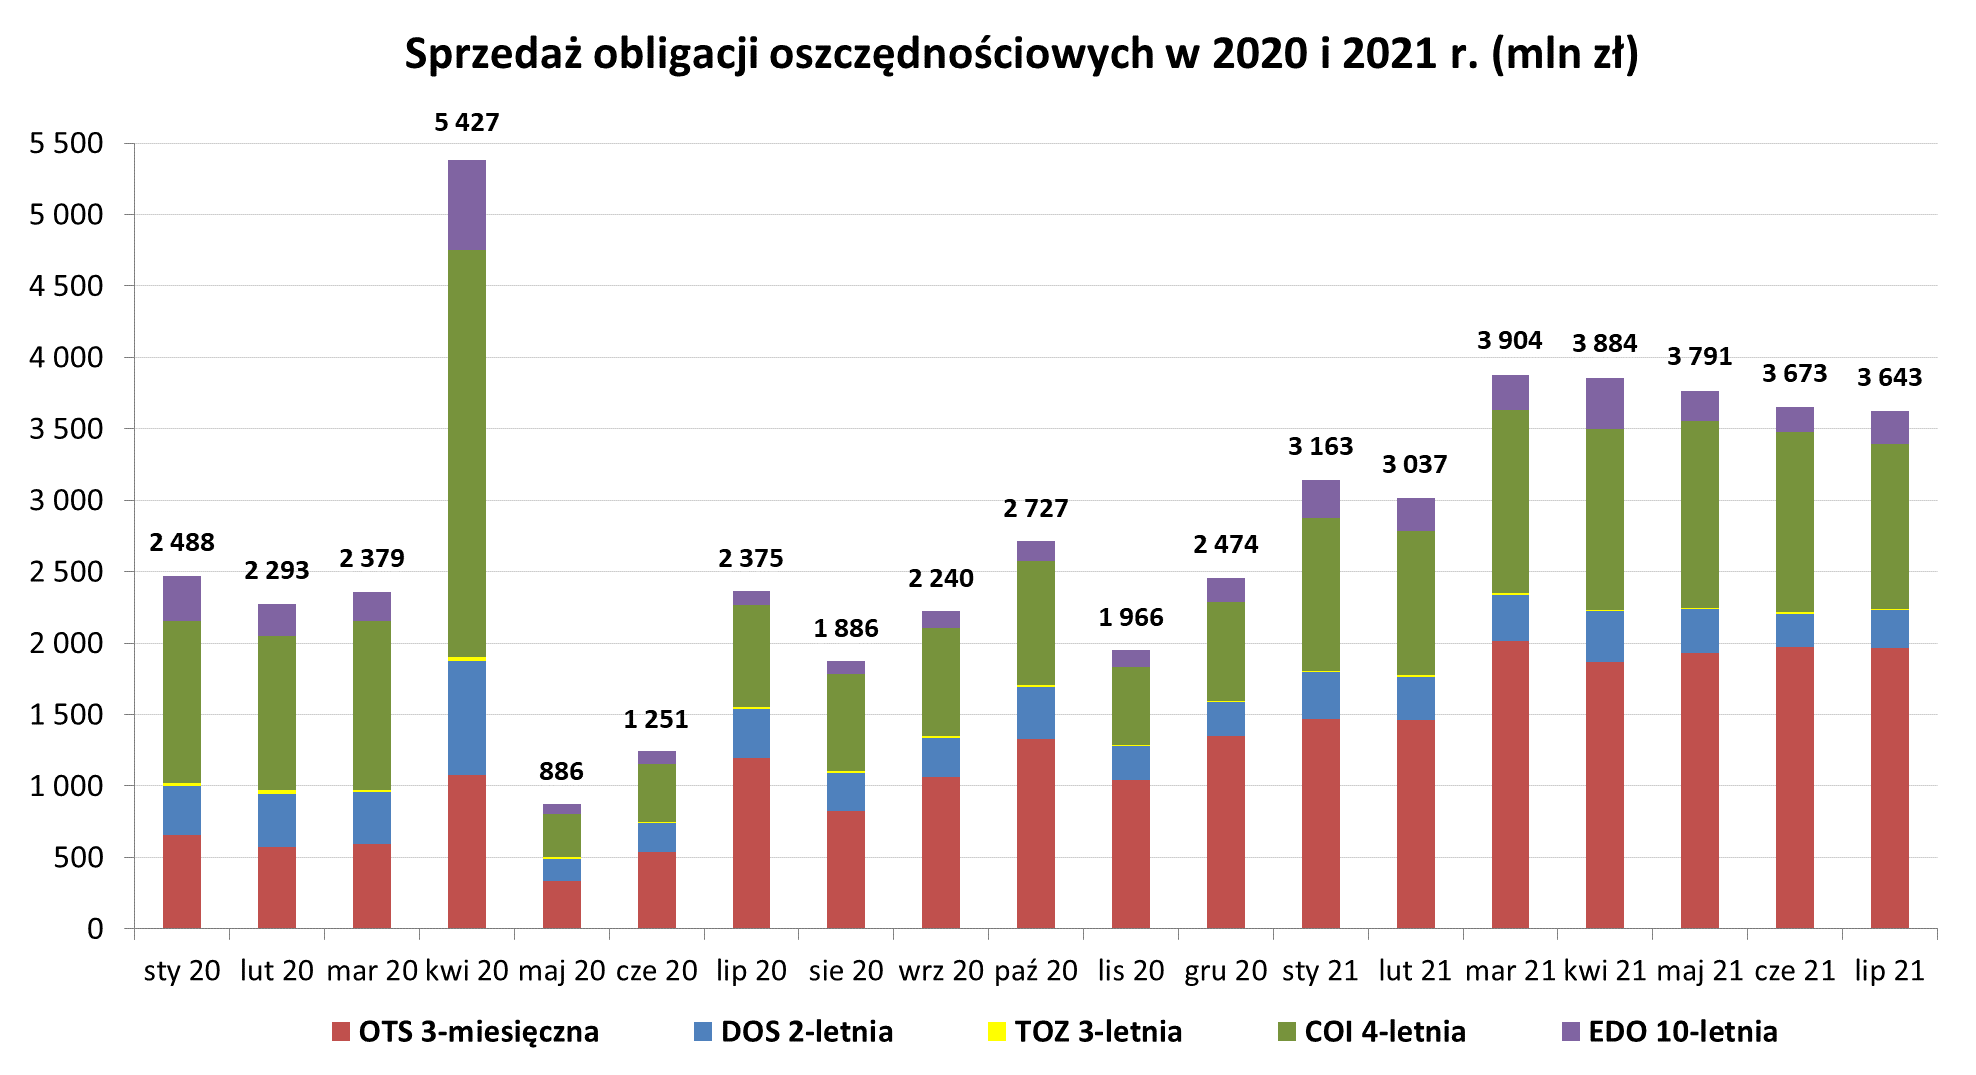 Grafika słupkowa przedstawiająca sprzedaż obligacji oszczędnościowych w 2020 i 2021 r (mln zł) w lipcu 2021 r.